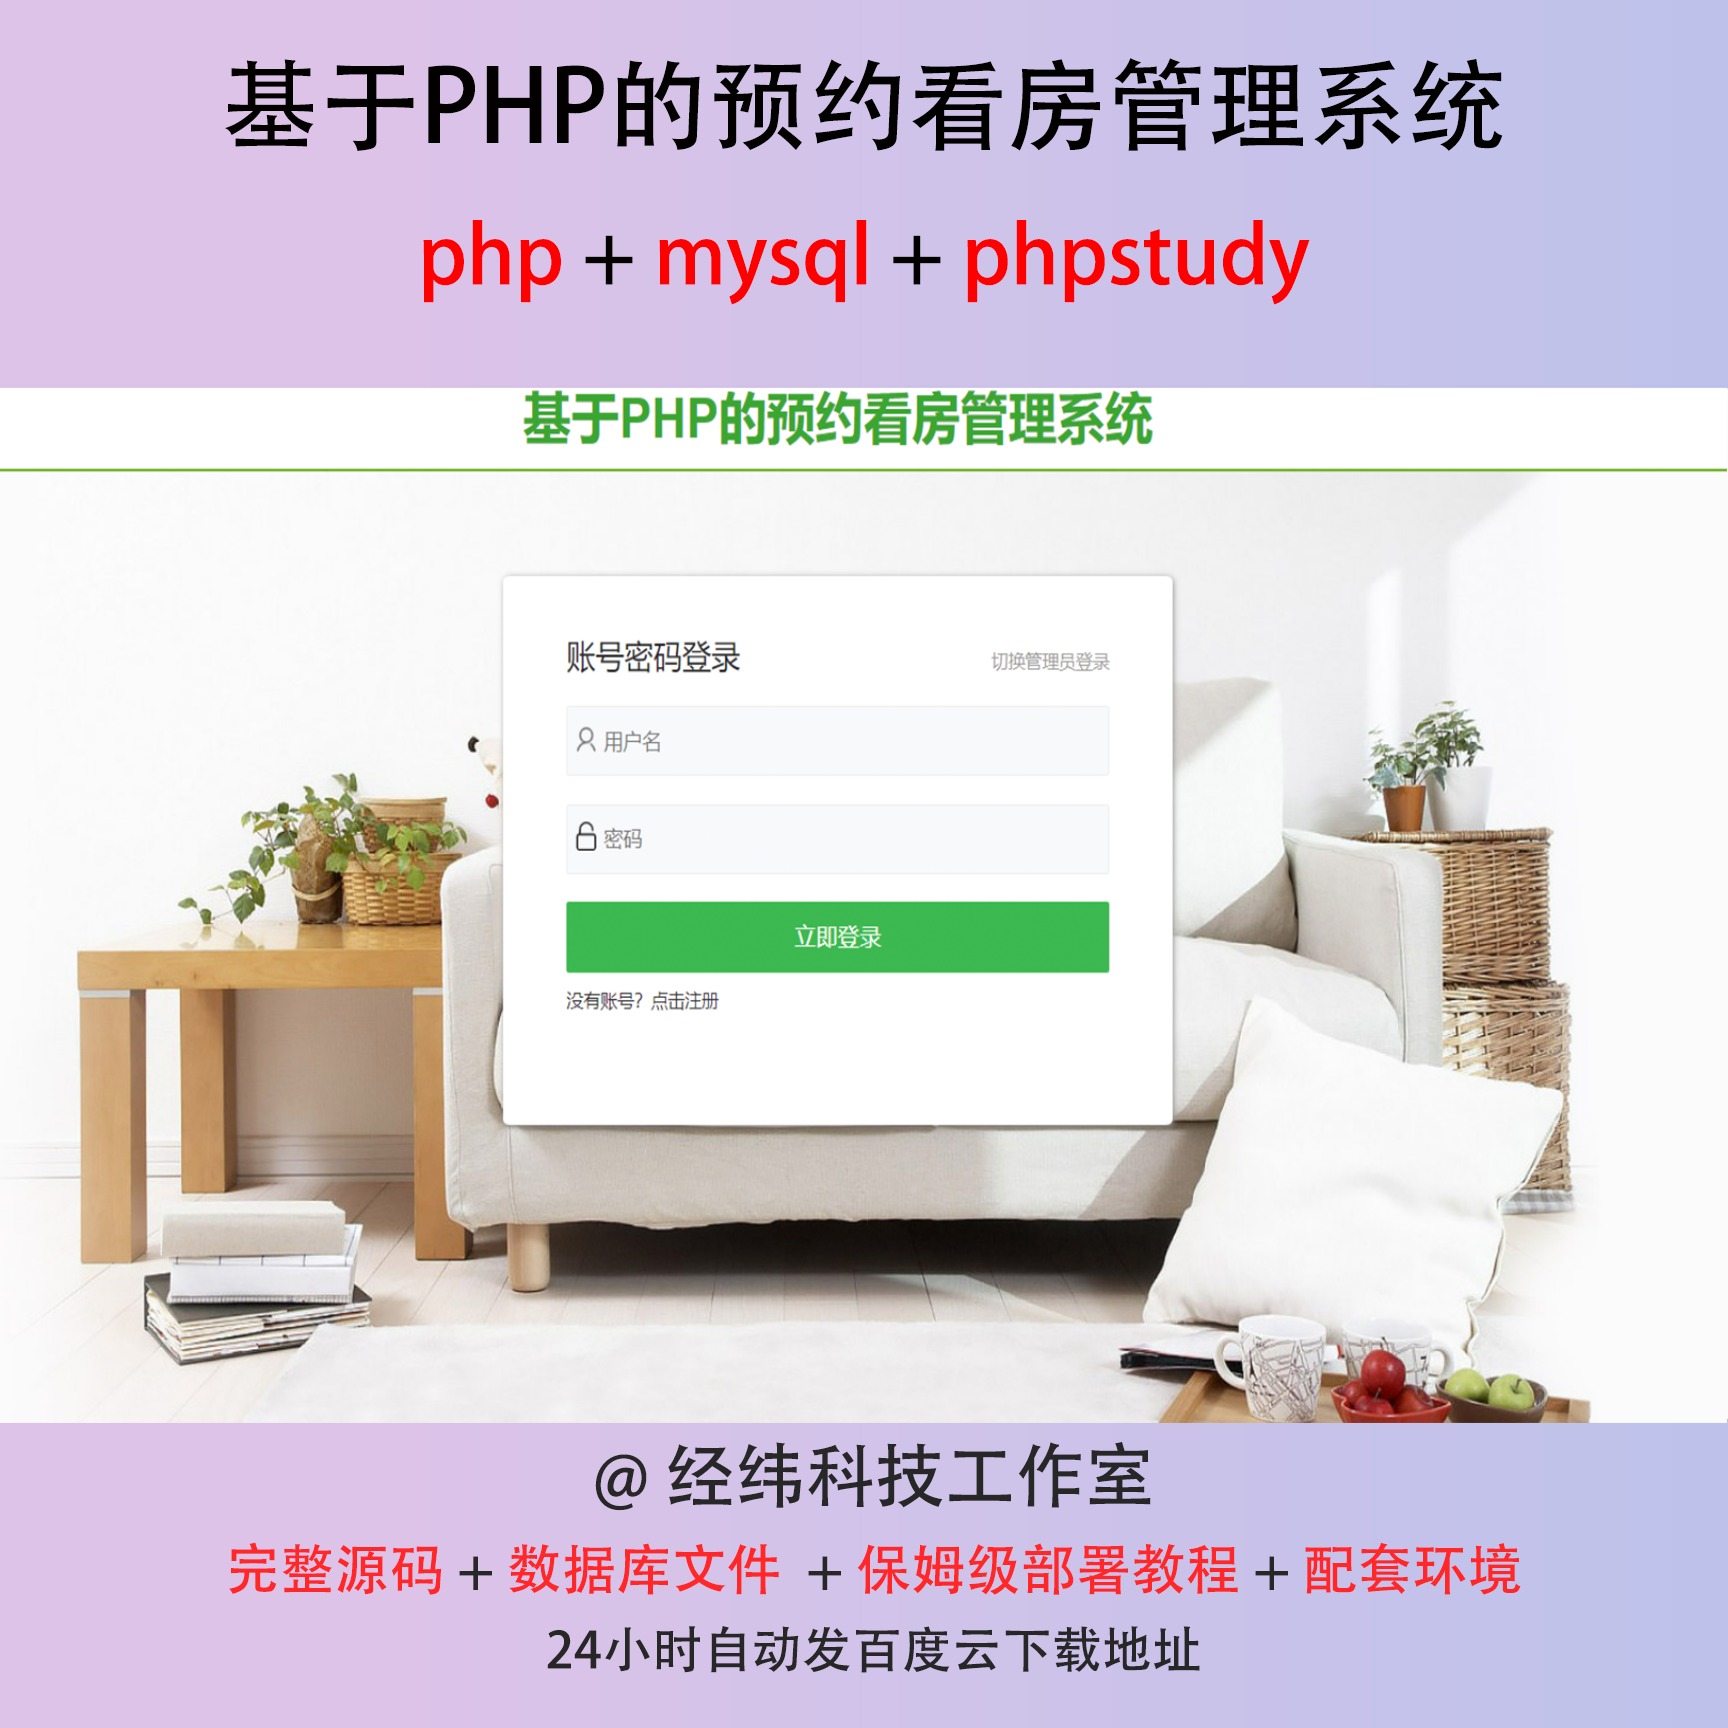 php 预约预定现场看房管理系统在线网上平台网站程序源代码